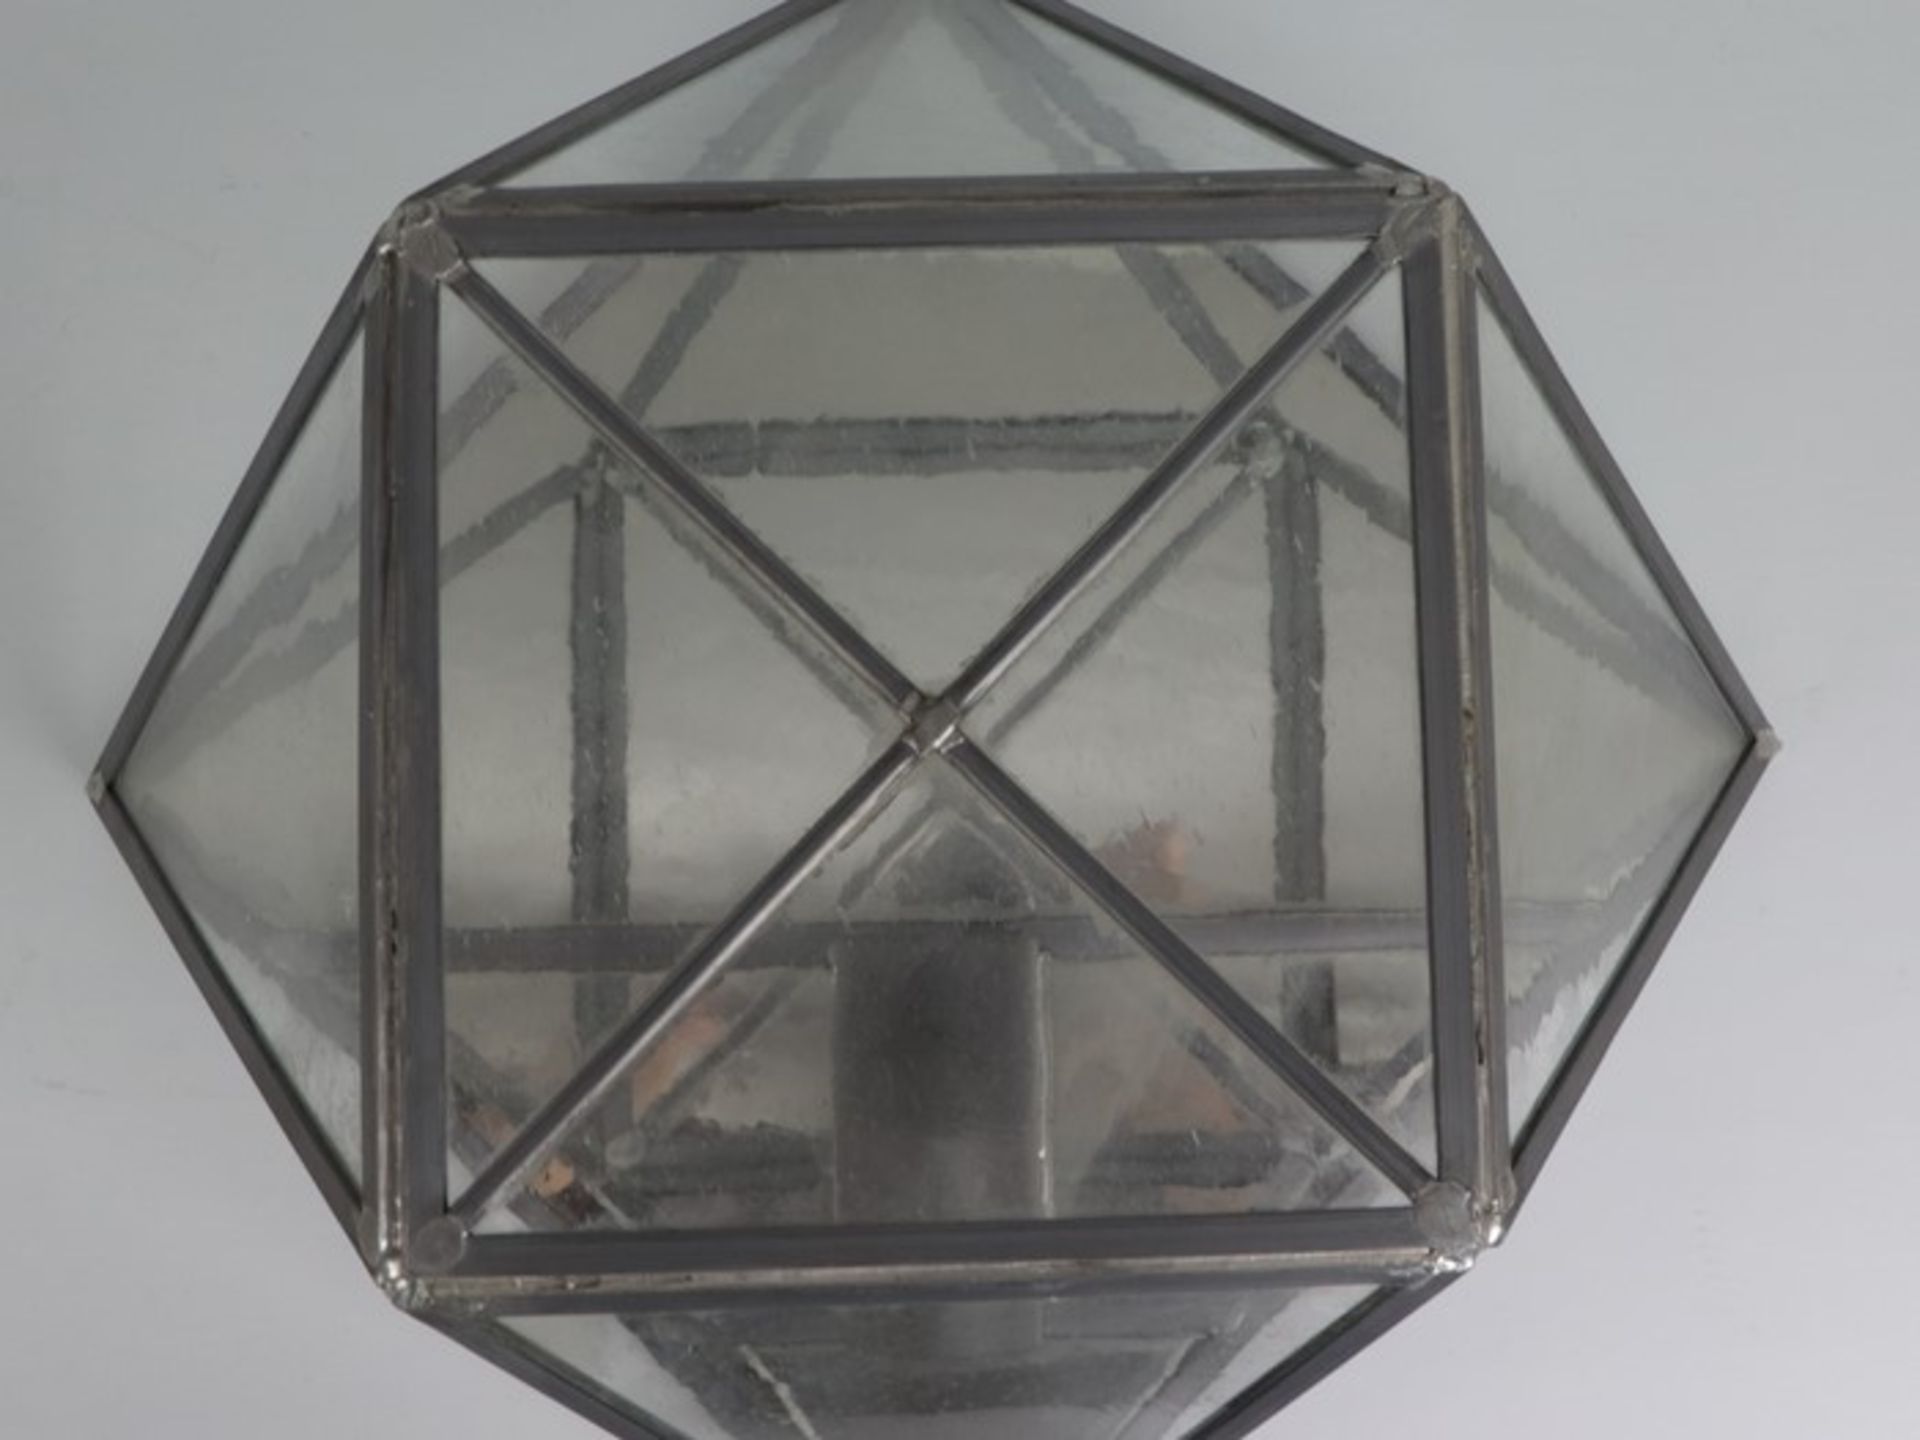 Wandlampen - PendantMetall/Glas, einflammig, Bleiverglasung, Blaseneinschlüsse, quadratisches - Image 2 of 4